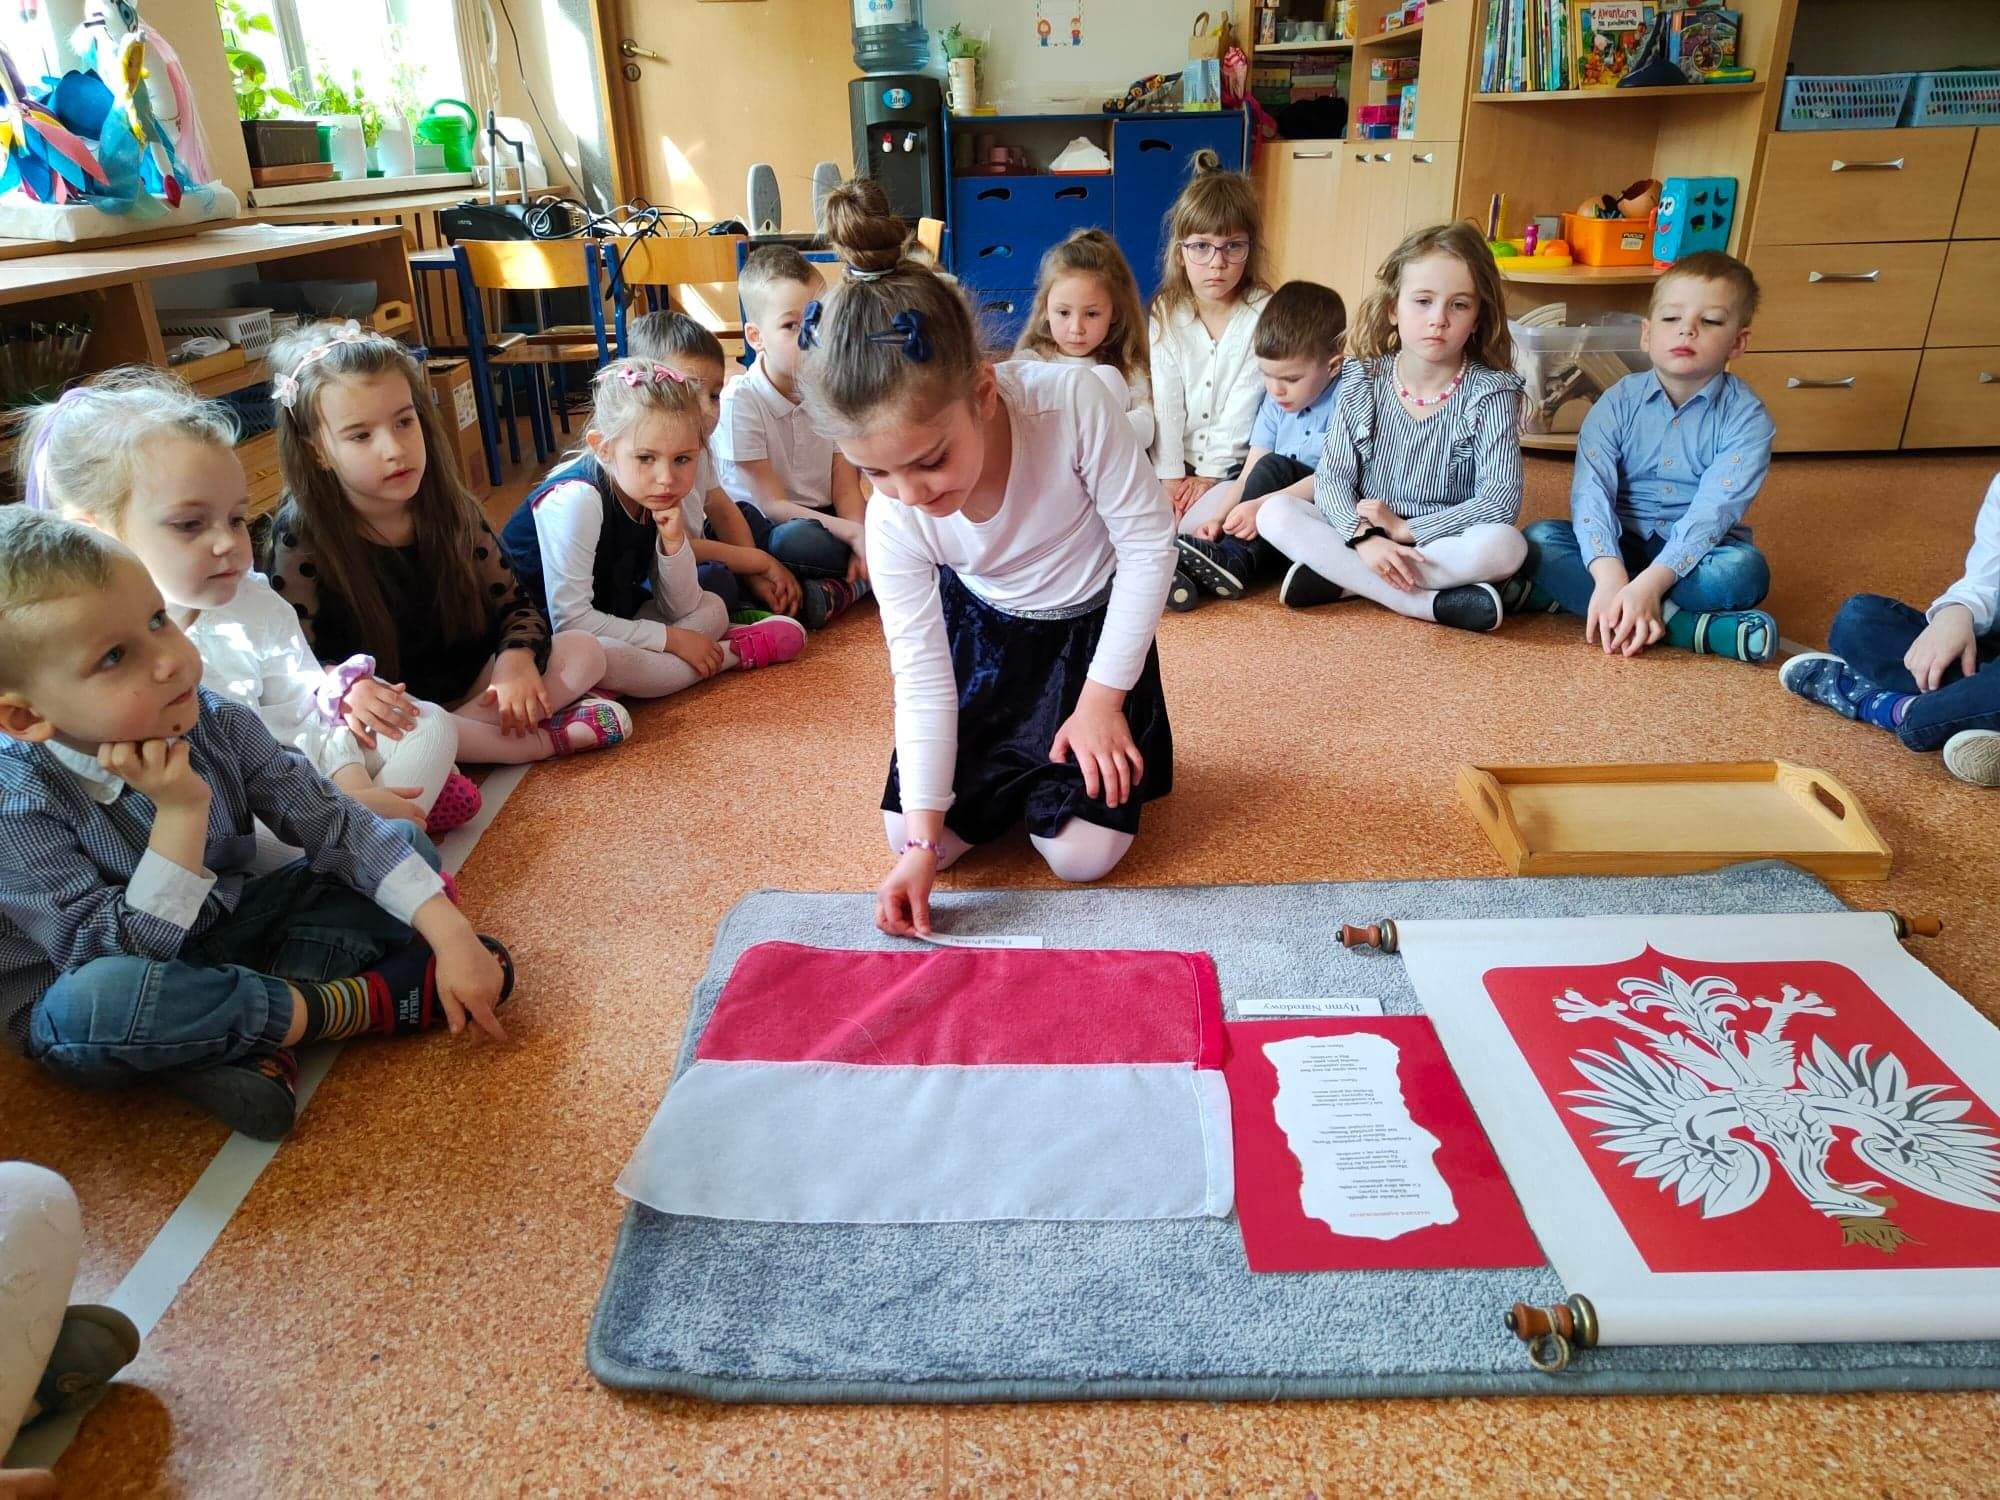 Dziewczynka dopasowuje podpis do symbolu narodowego - Flagi Polski.